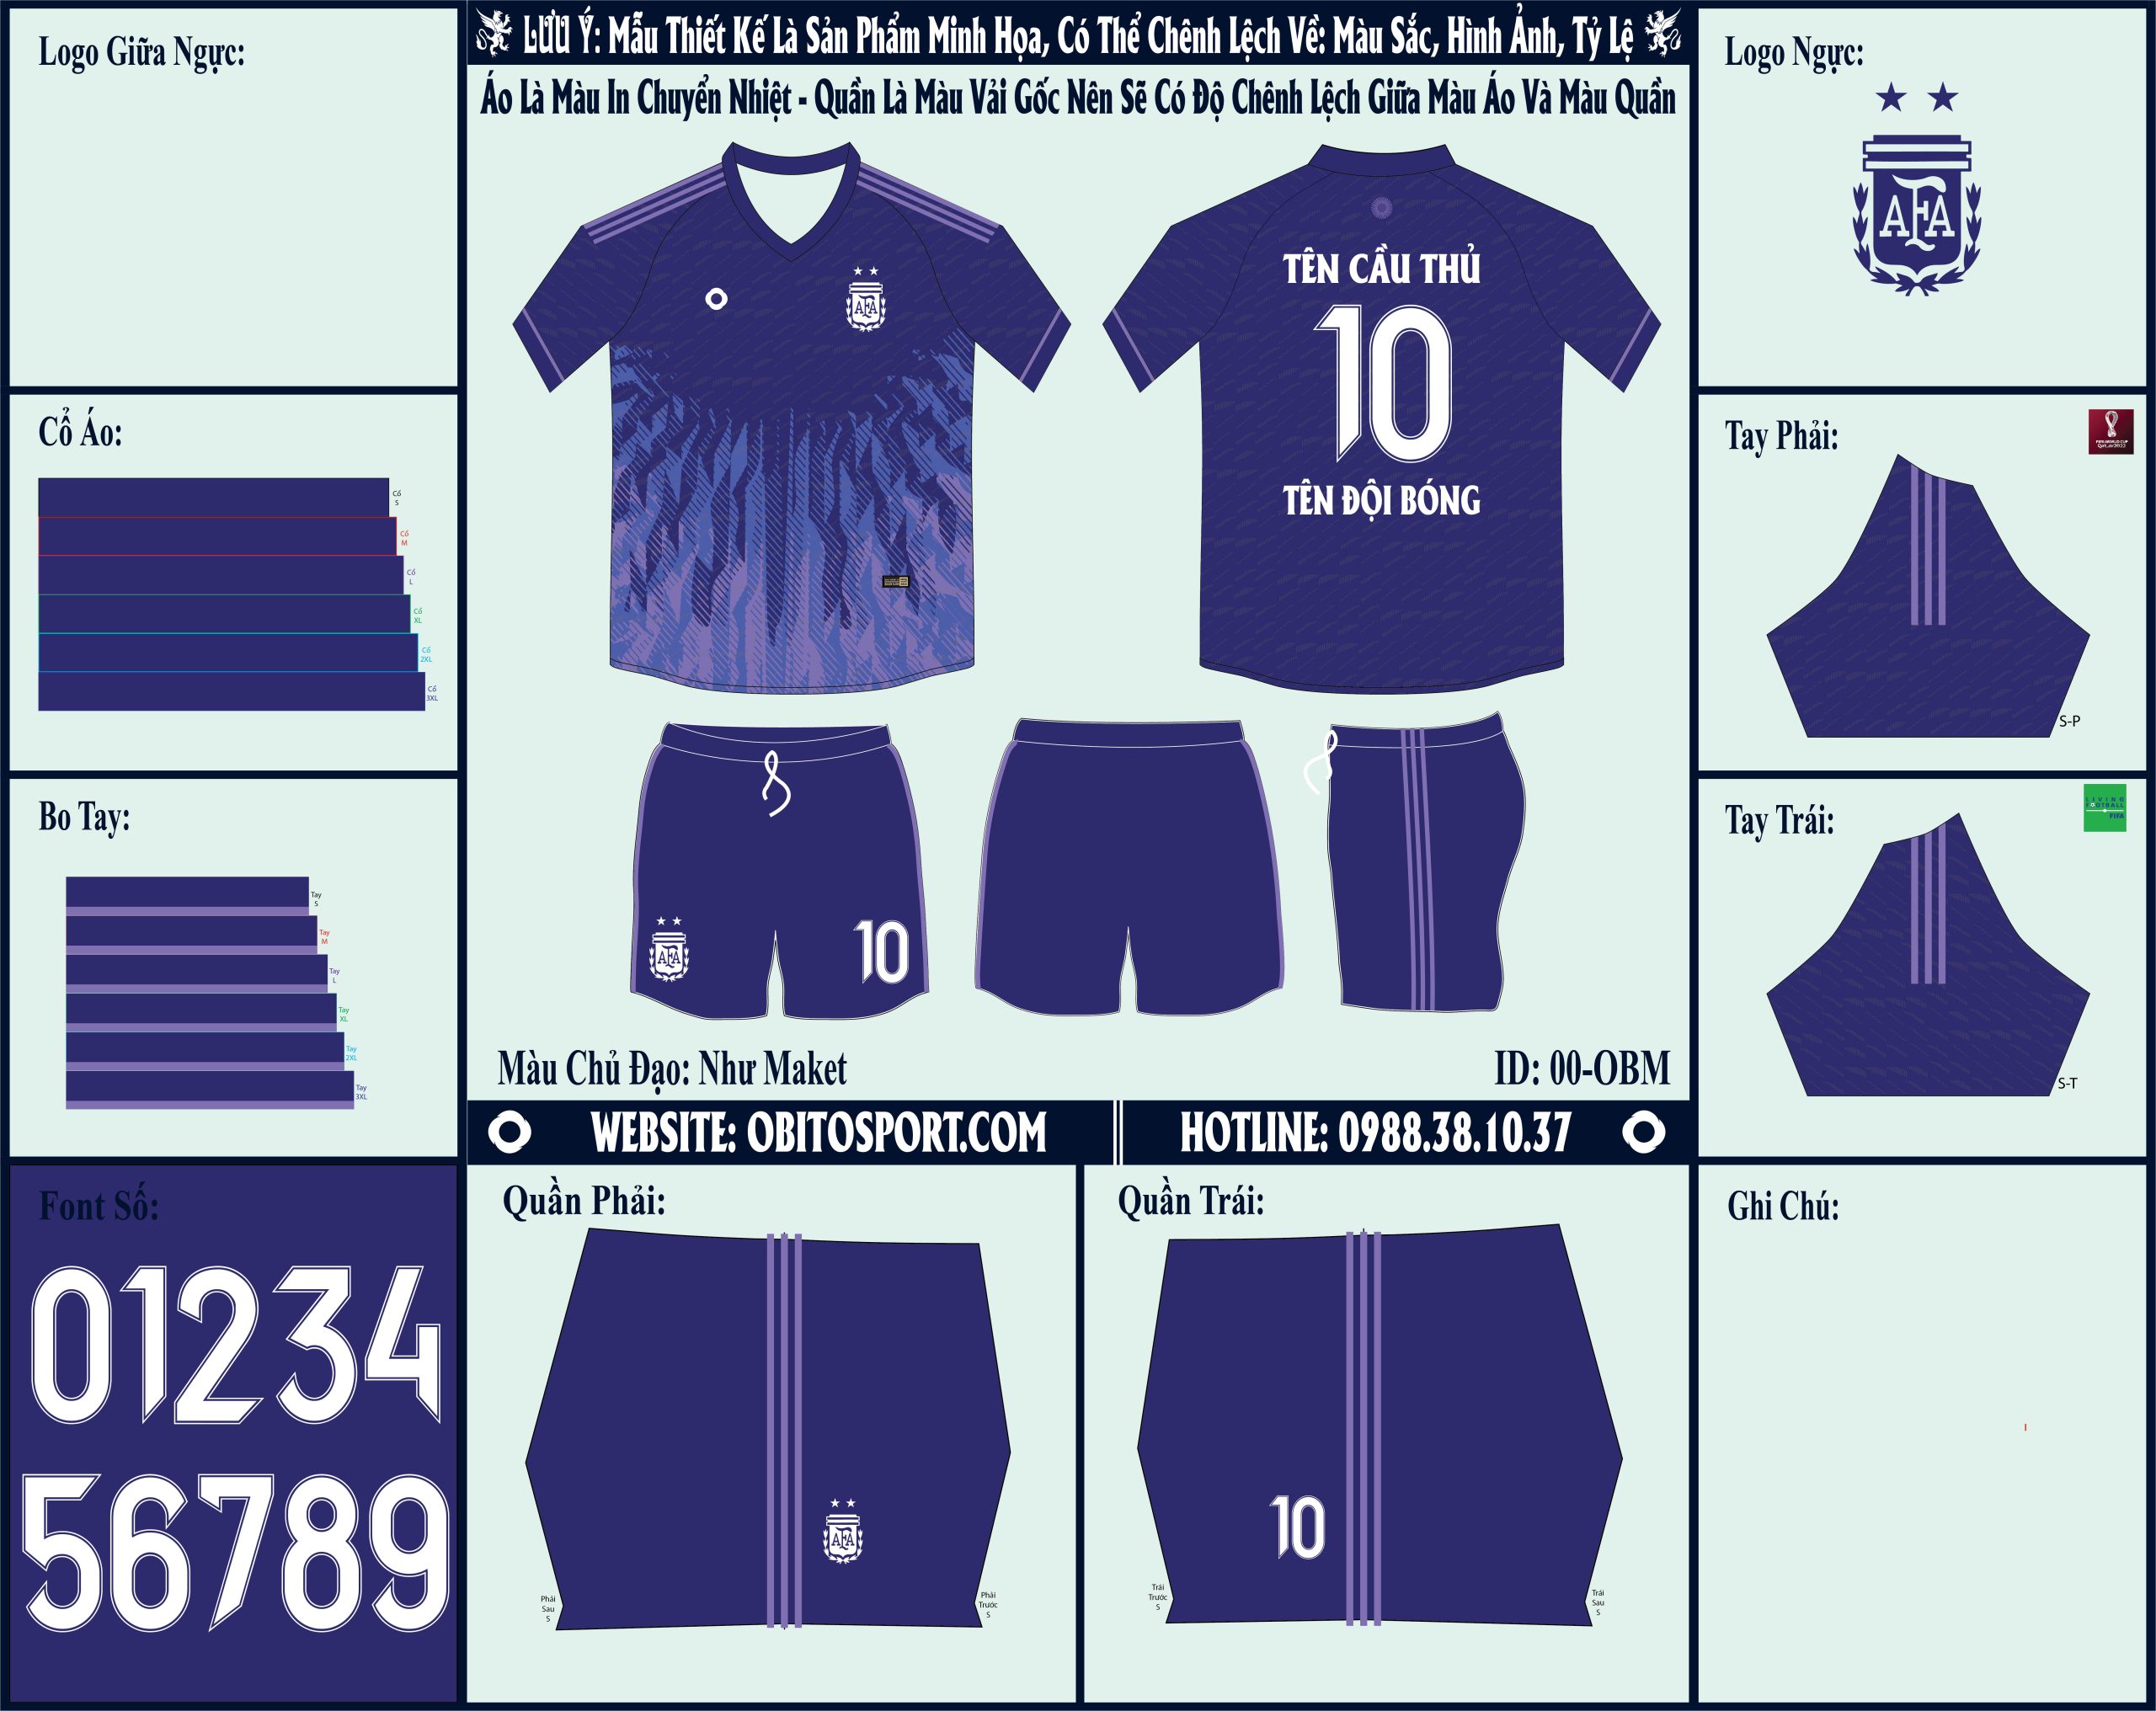  Bạn đã sẵn sàng bổ sung thêm ý tưởng cho mình bằng mẫu market áo đội tuyển Argentina sân khách World Cup 2022 với màu tím thu hút, cuốn hút này đến từ thương hiệu Obito Sport chưa?